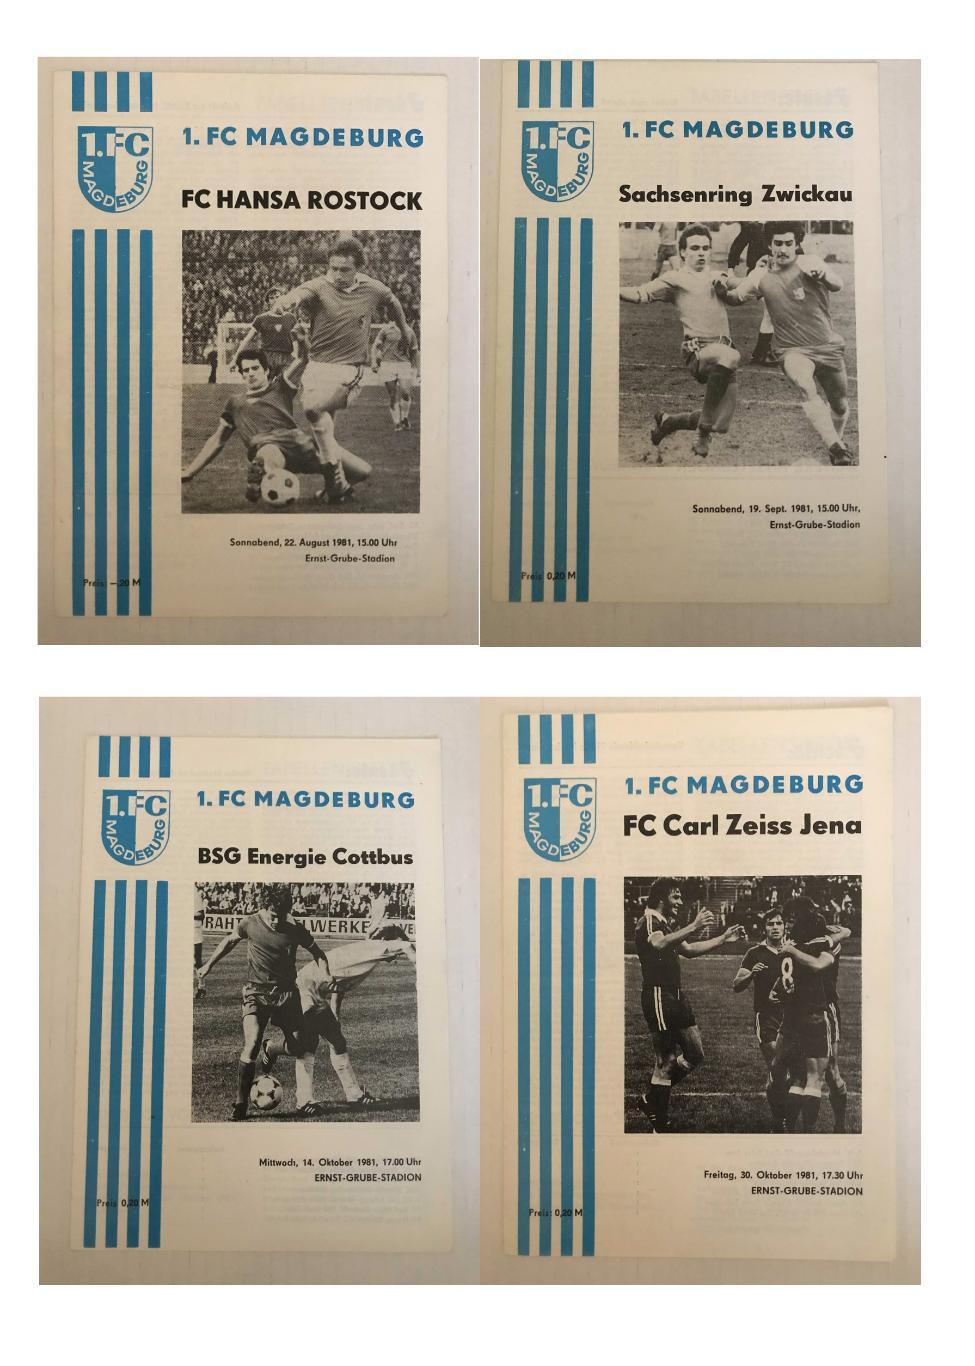 1.ФК Магдебург Оберлига ГДР 1981/82 домашний комплект